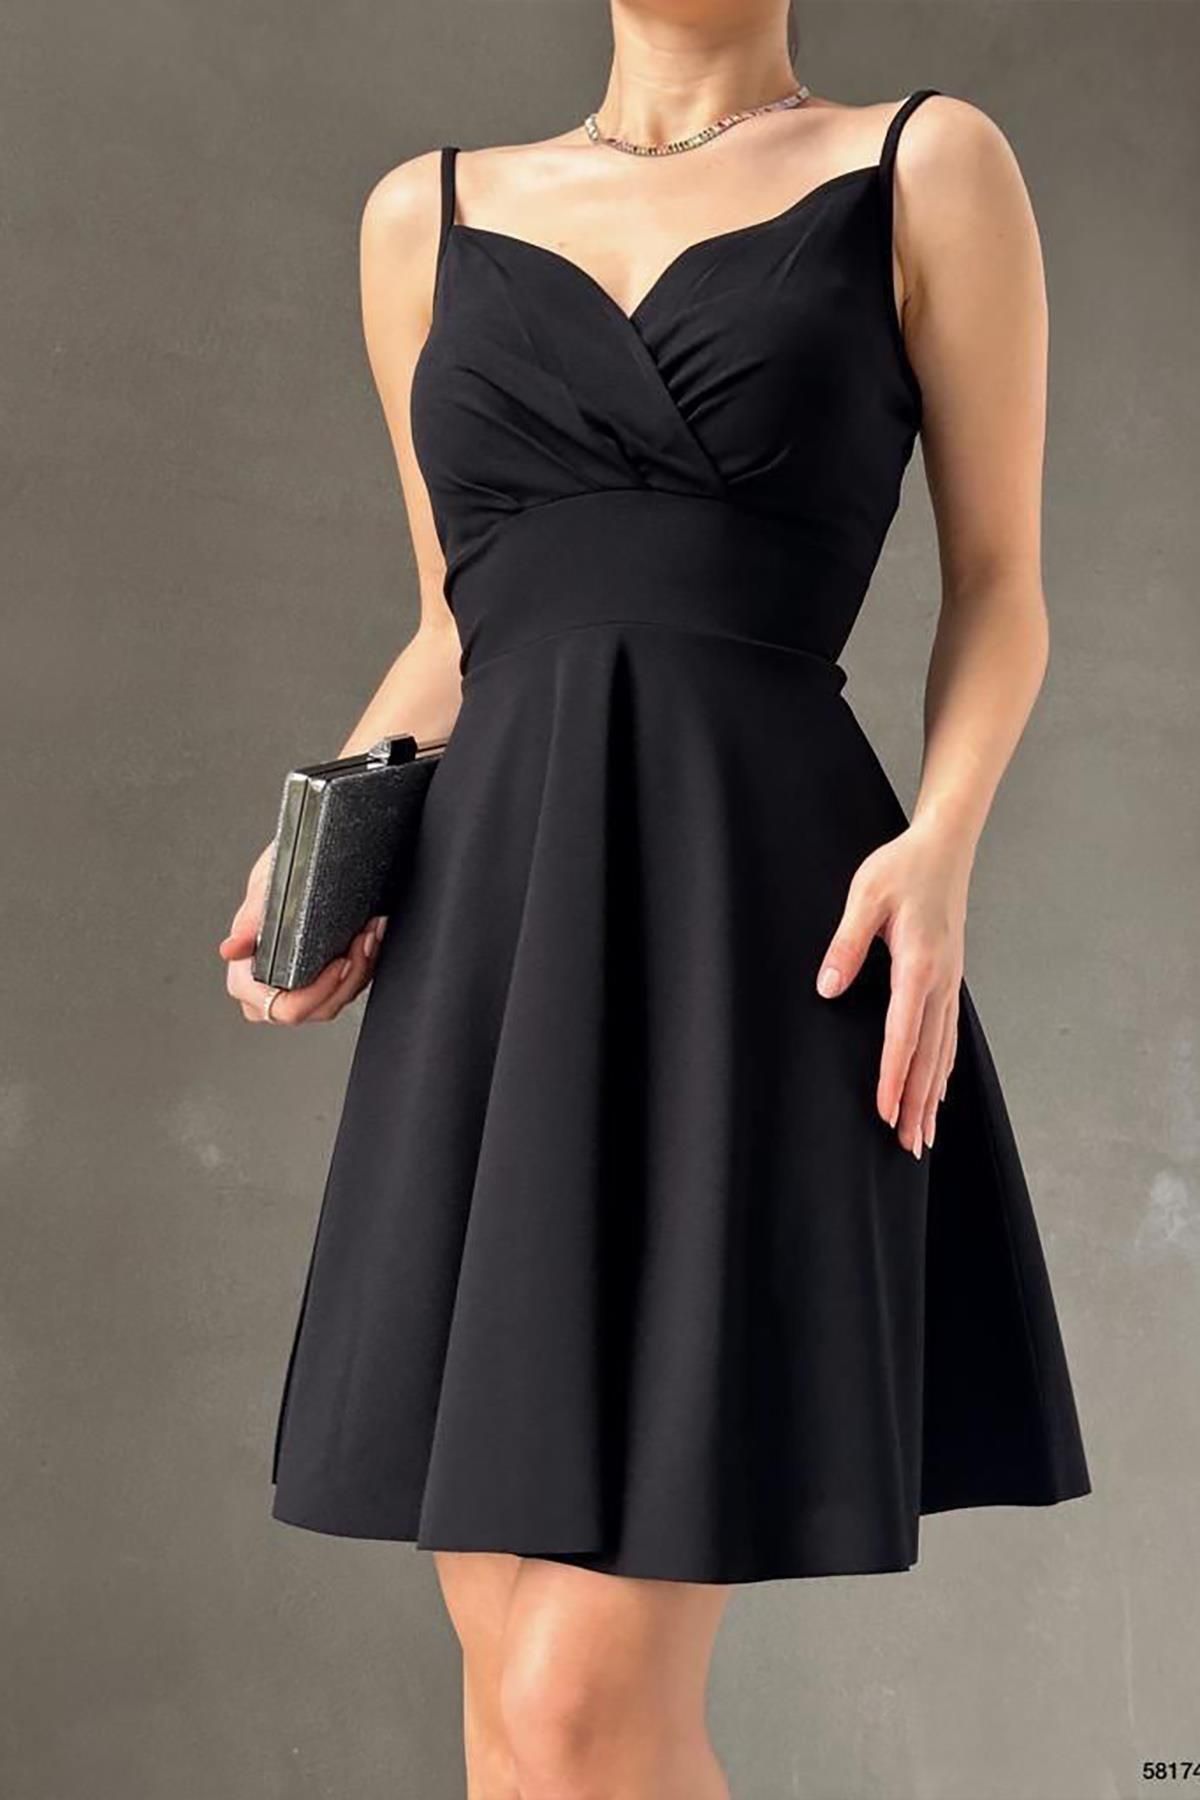 Deafox Krep Kumaş Siyah İnce Askılı Kloş Elbise